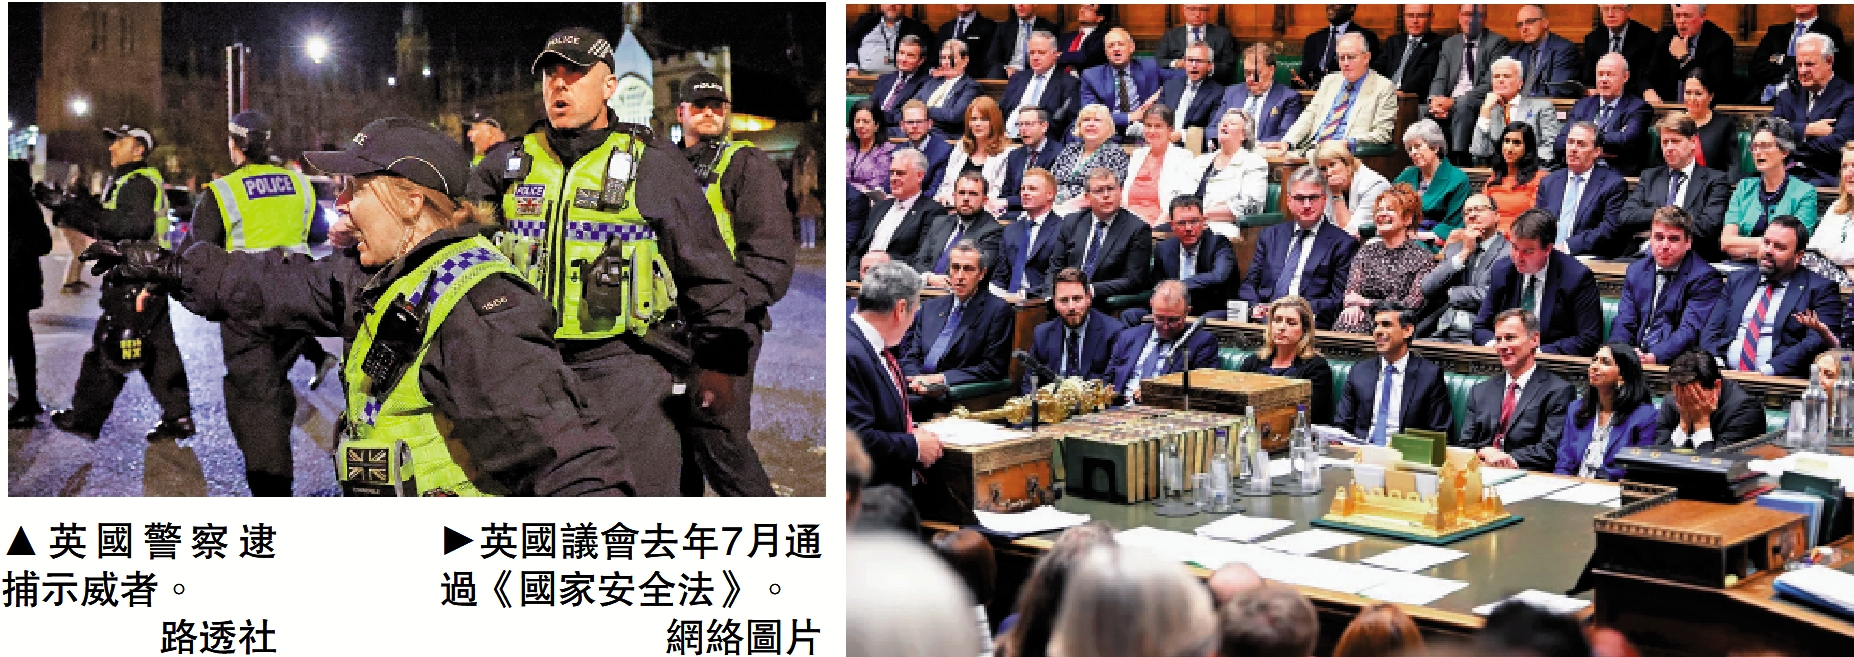 　　左圖：英國警察逮捕示威者。\路透社；右圖：英國議會去年7月通過《國家安全法》。\網絡圖片